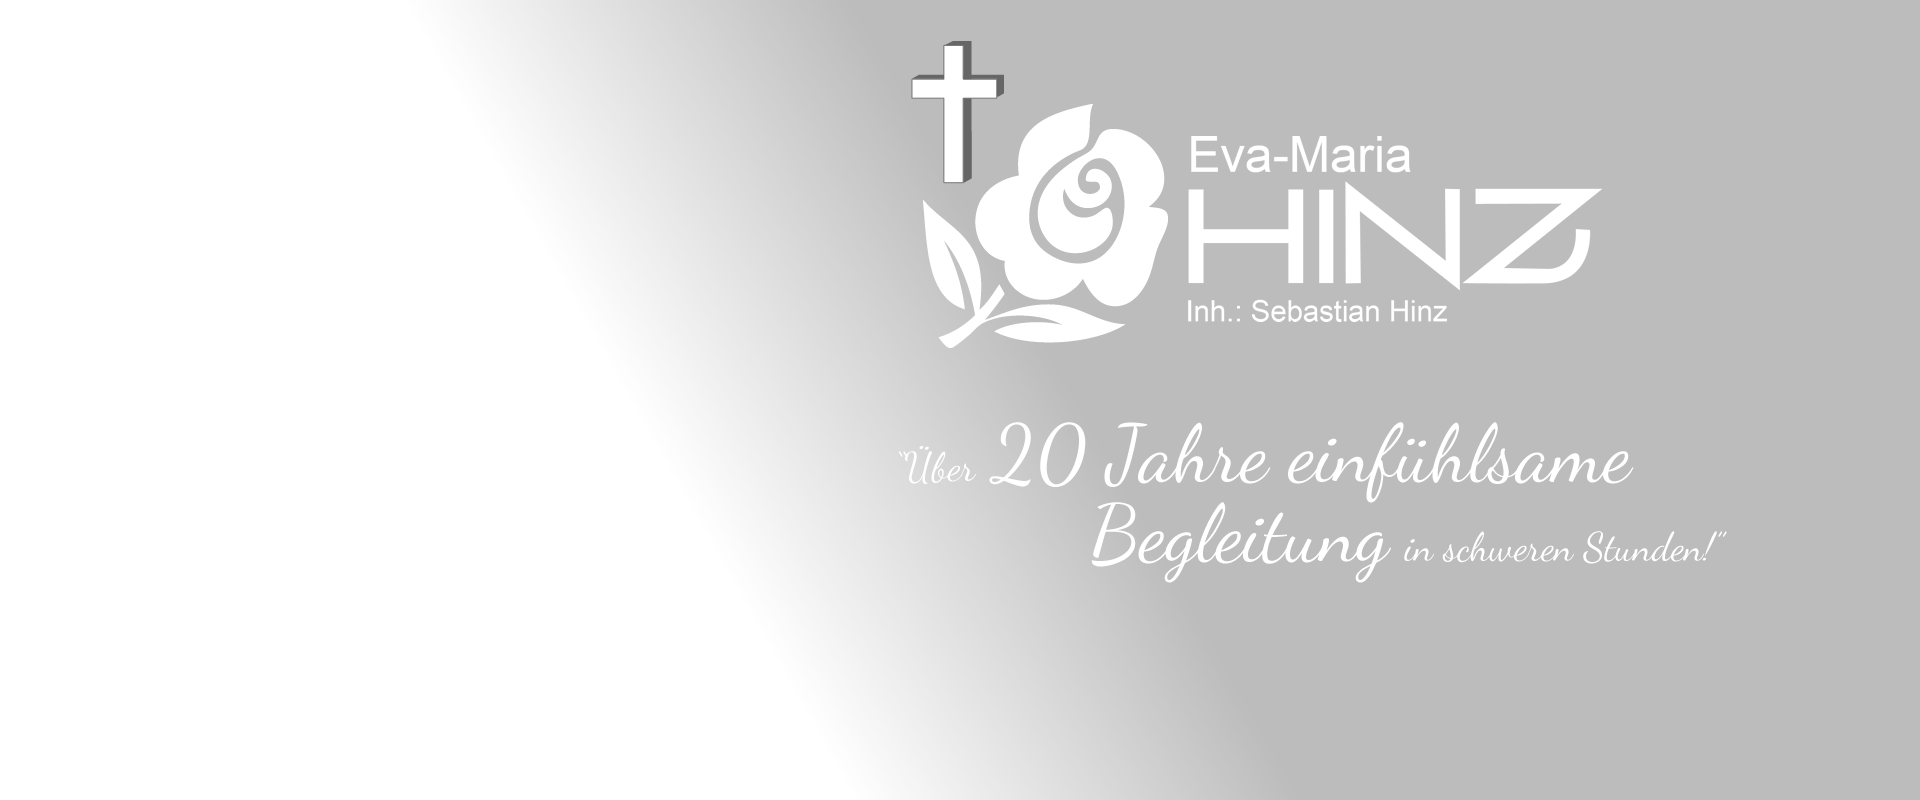 Bestattungsunternehmen Eva-Maria Hinz - Ihr Bestatter in der Region Löbau, Niesky und Bautzen